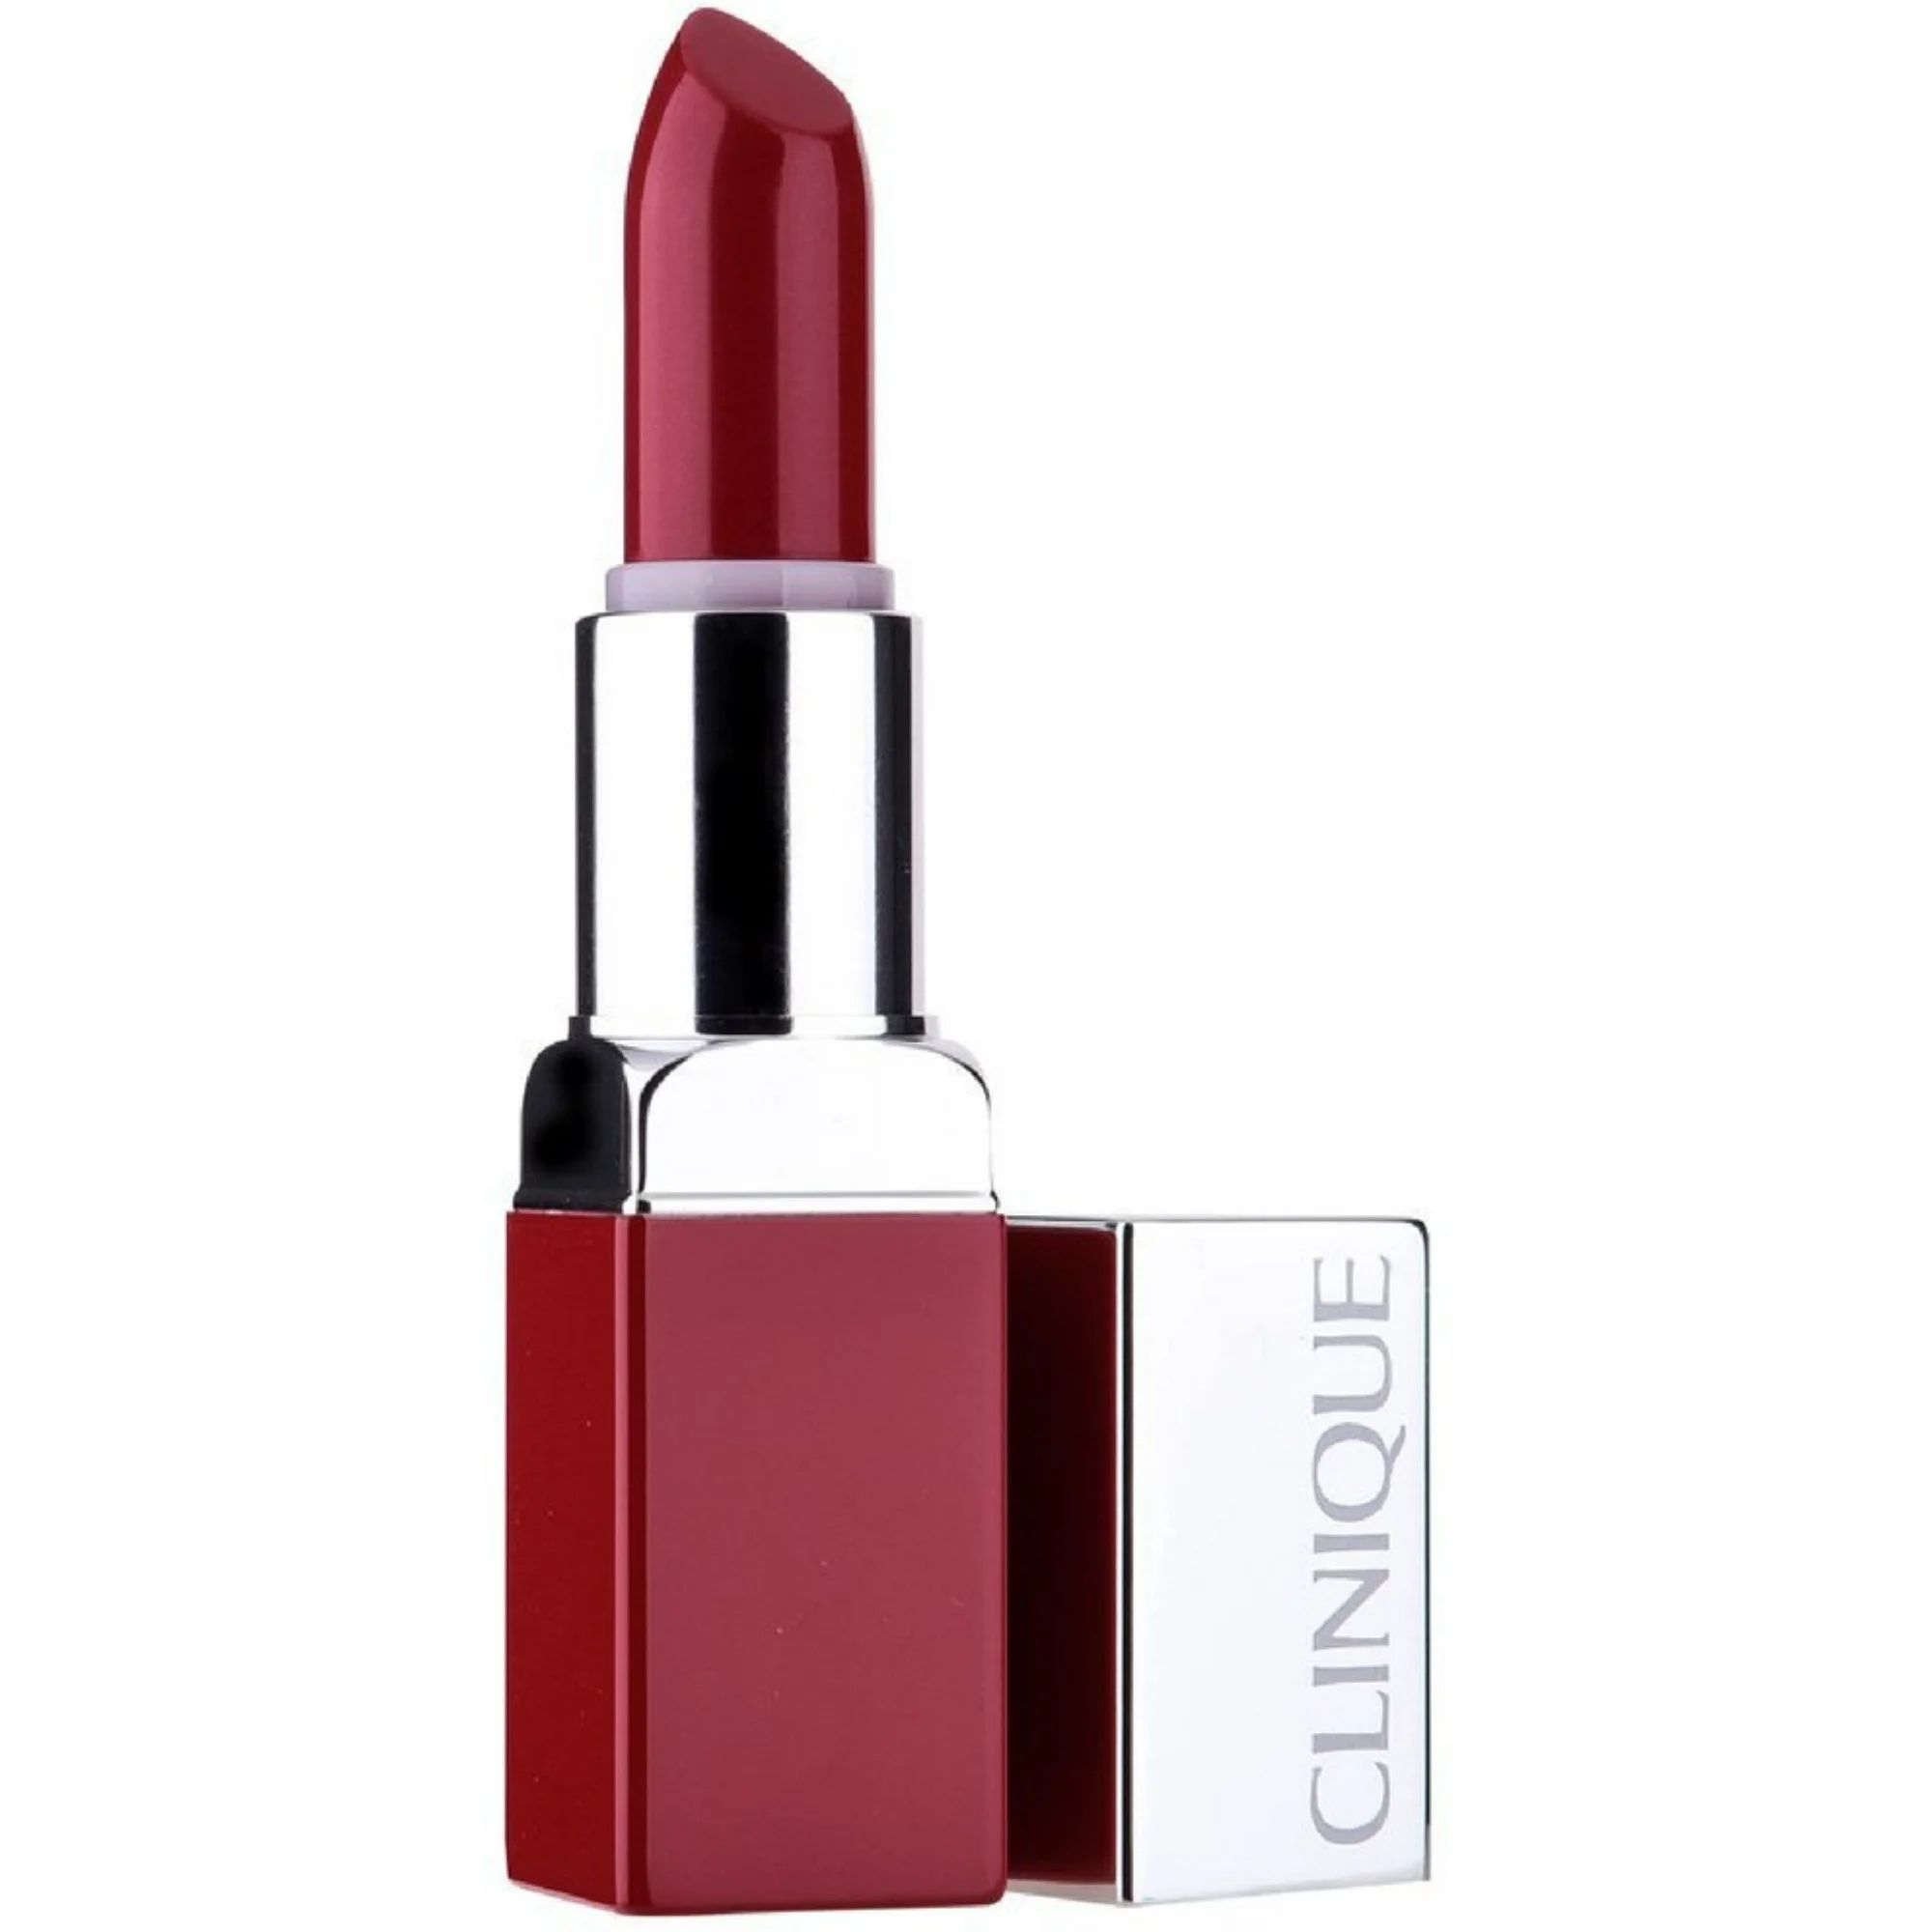 Clinique Clinique Pop Lip Colour + Primer - # 08 Cherry Pop 0.13 oz Lipstick | Walmart (US)